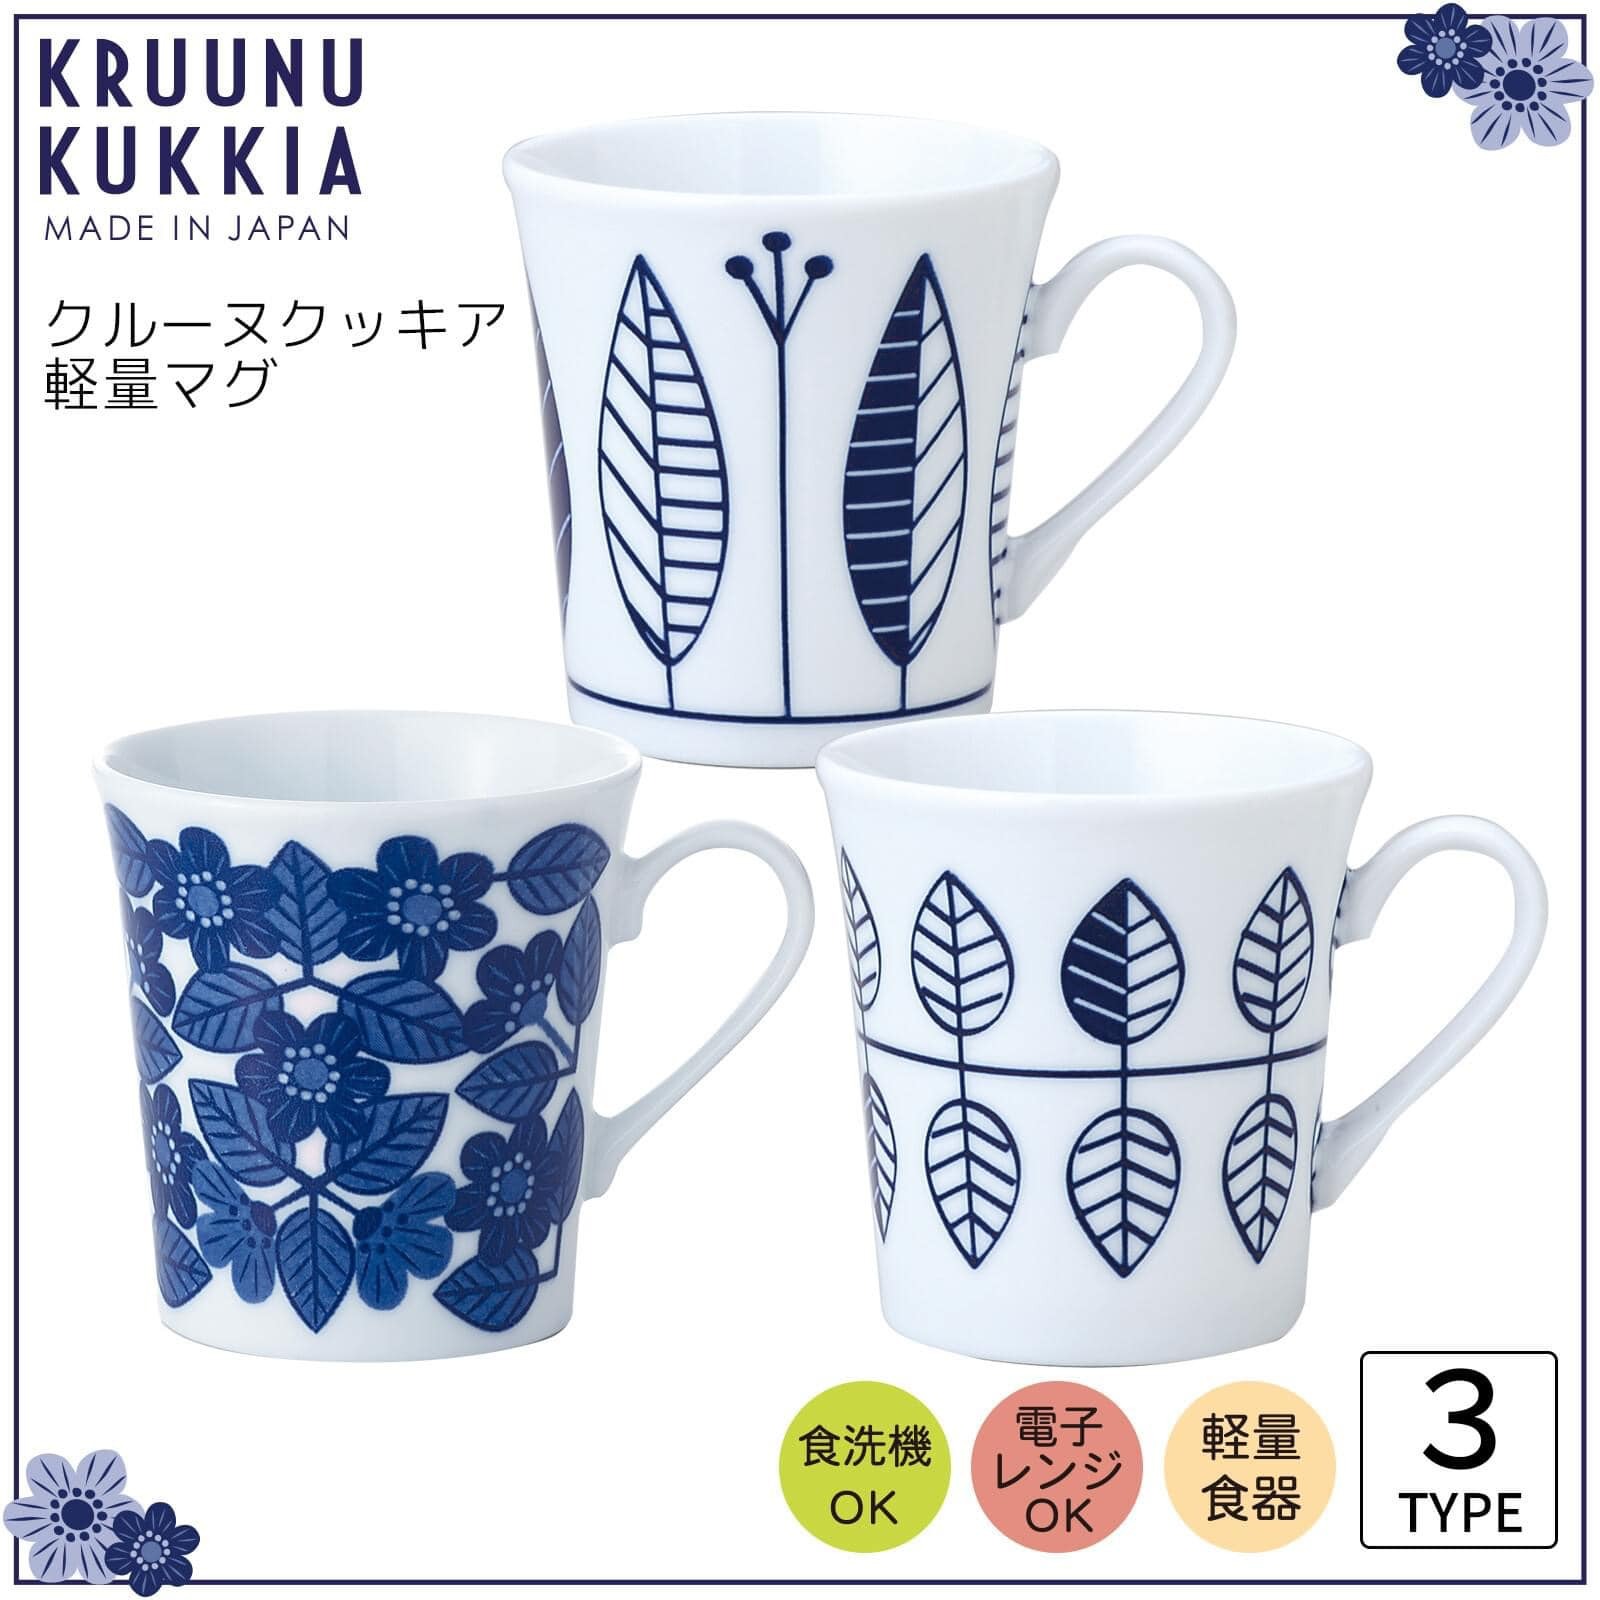 日本餐具 美濃燒瓷杯KRUUNU KUKKIA輕量馬克杯320ml 王球餐具 (6)